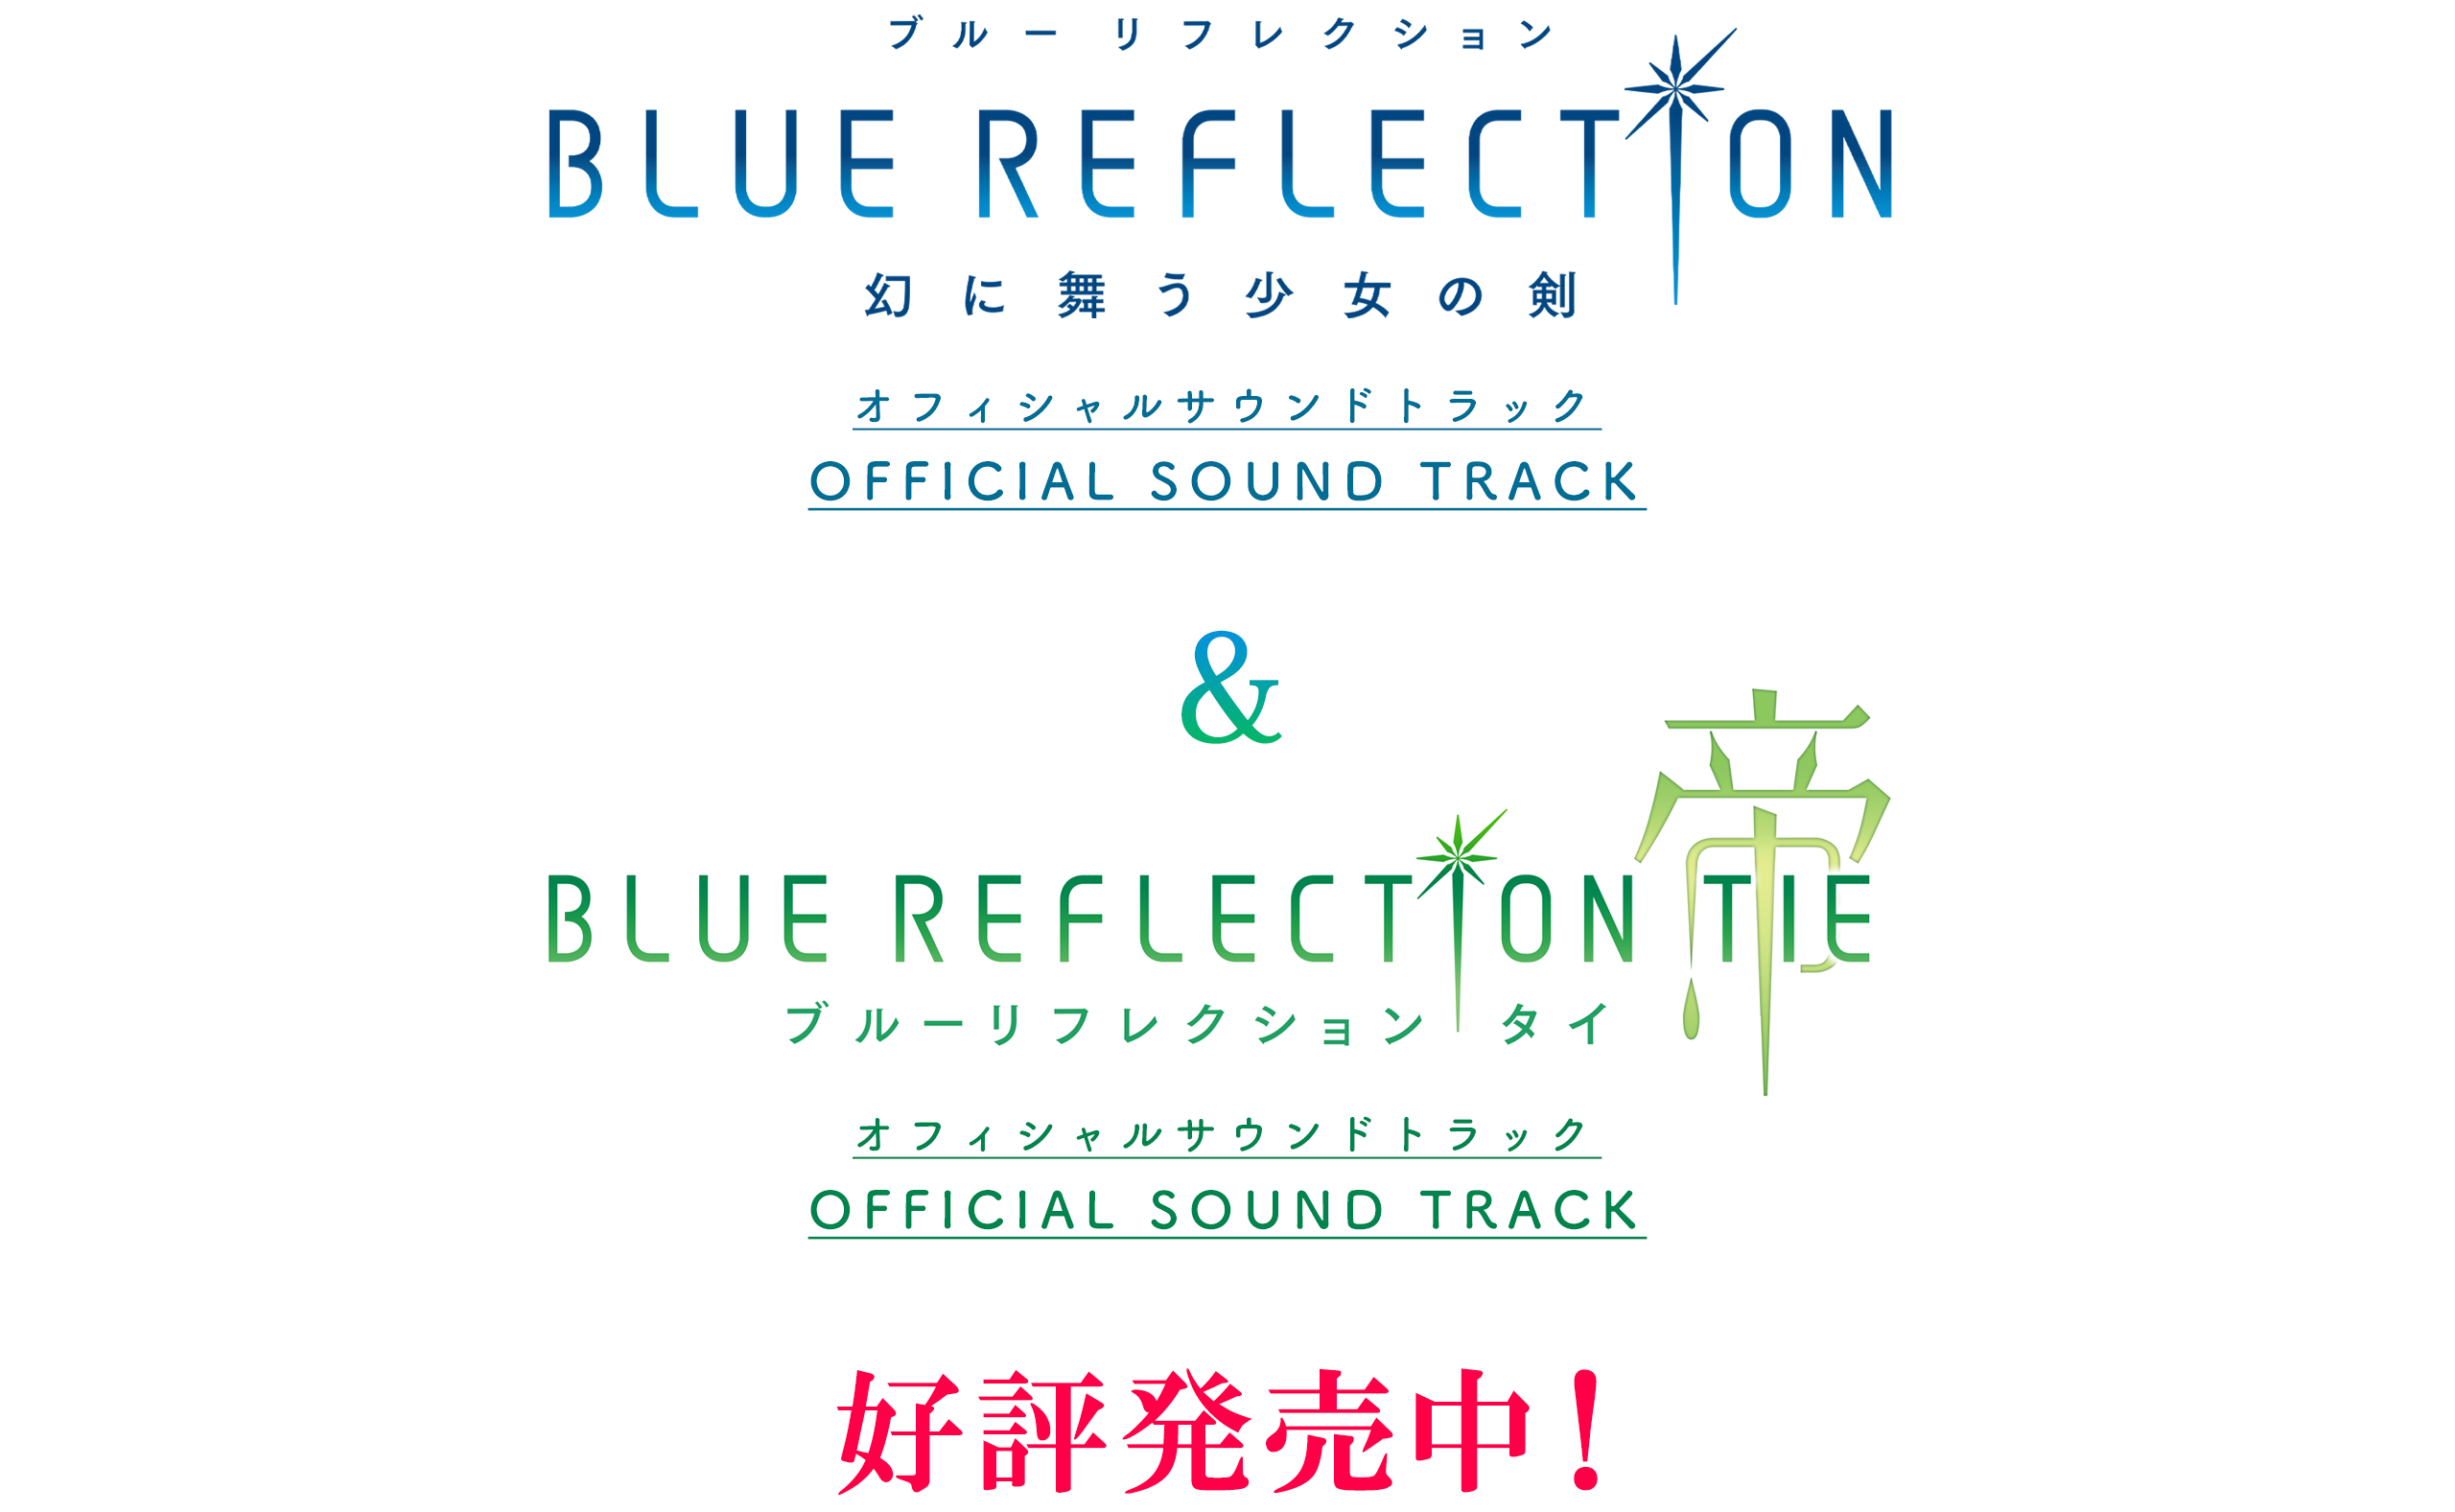 BLUE REFLECTION TIE/帝 オフィシャルサウンドトラック / ガストショップ